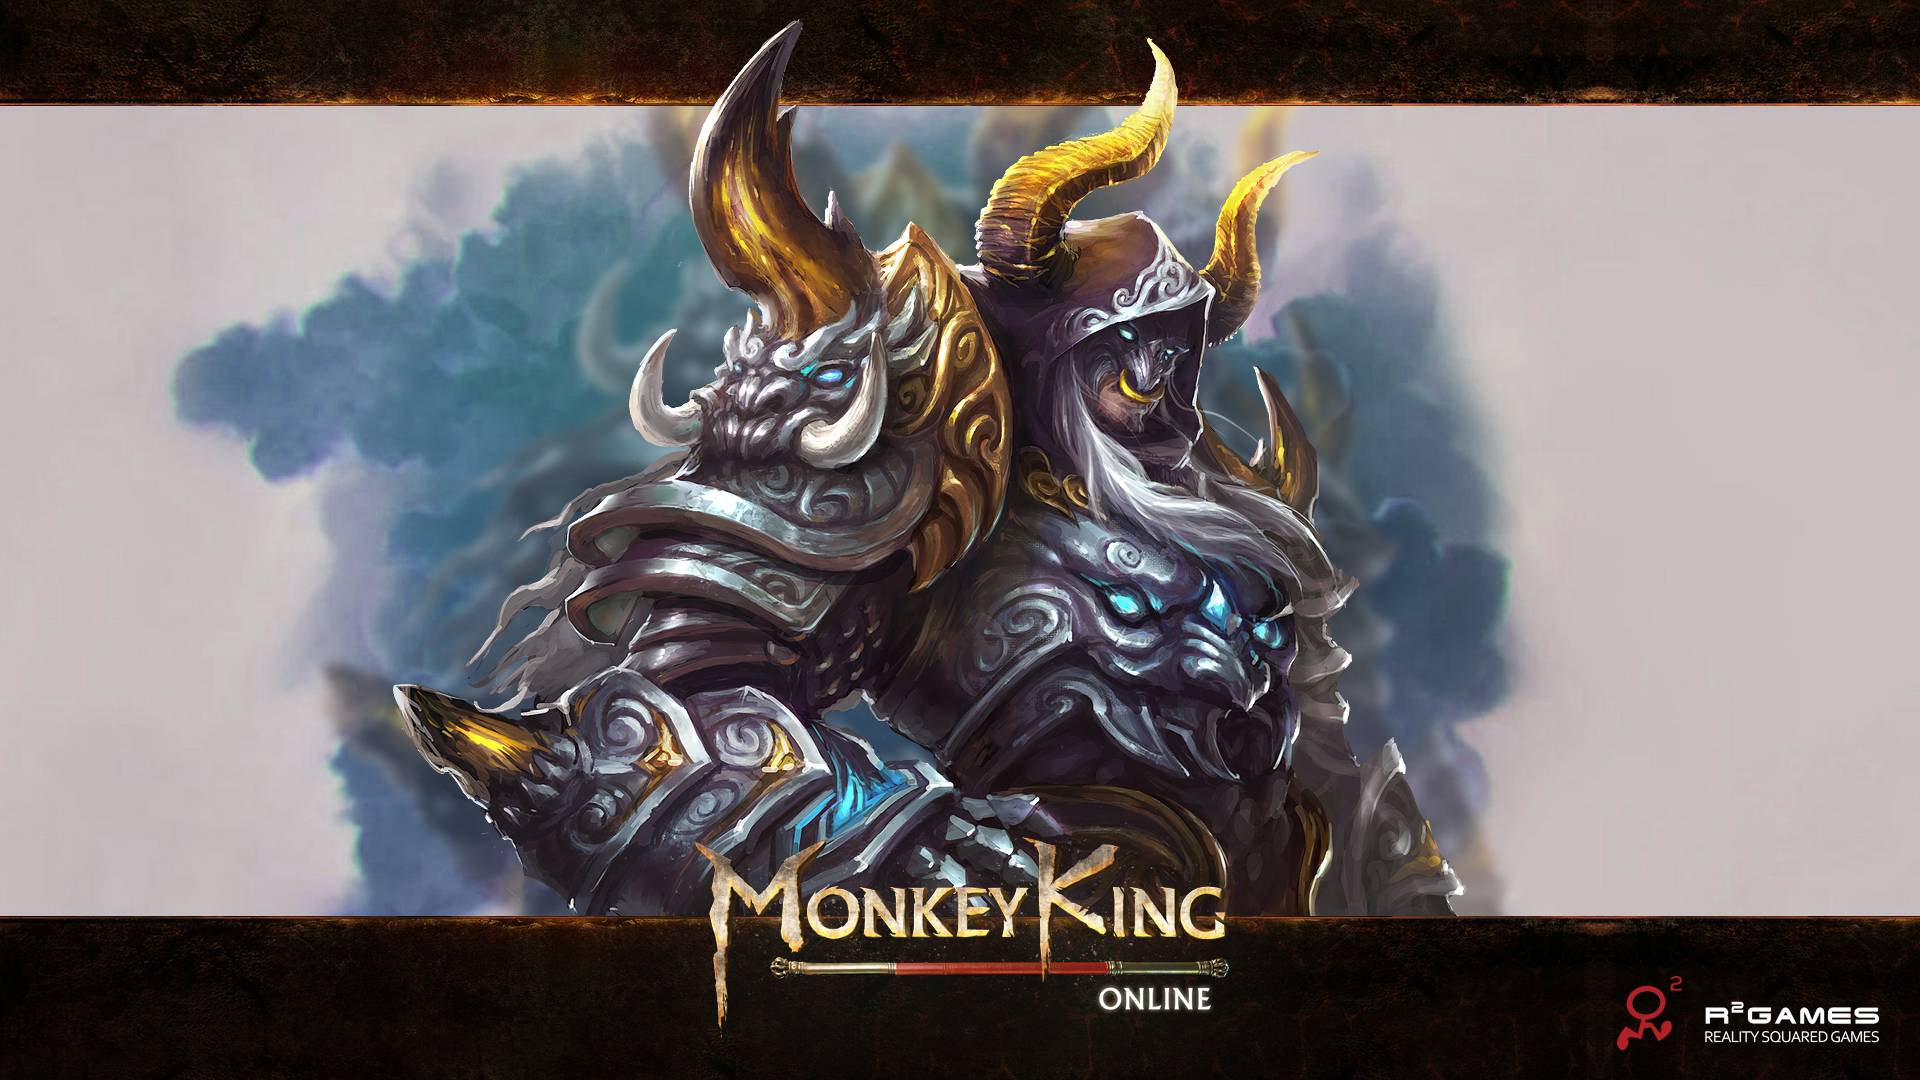 Monkey King Online Wallpaper